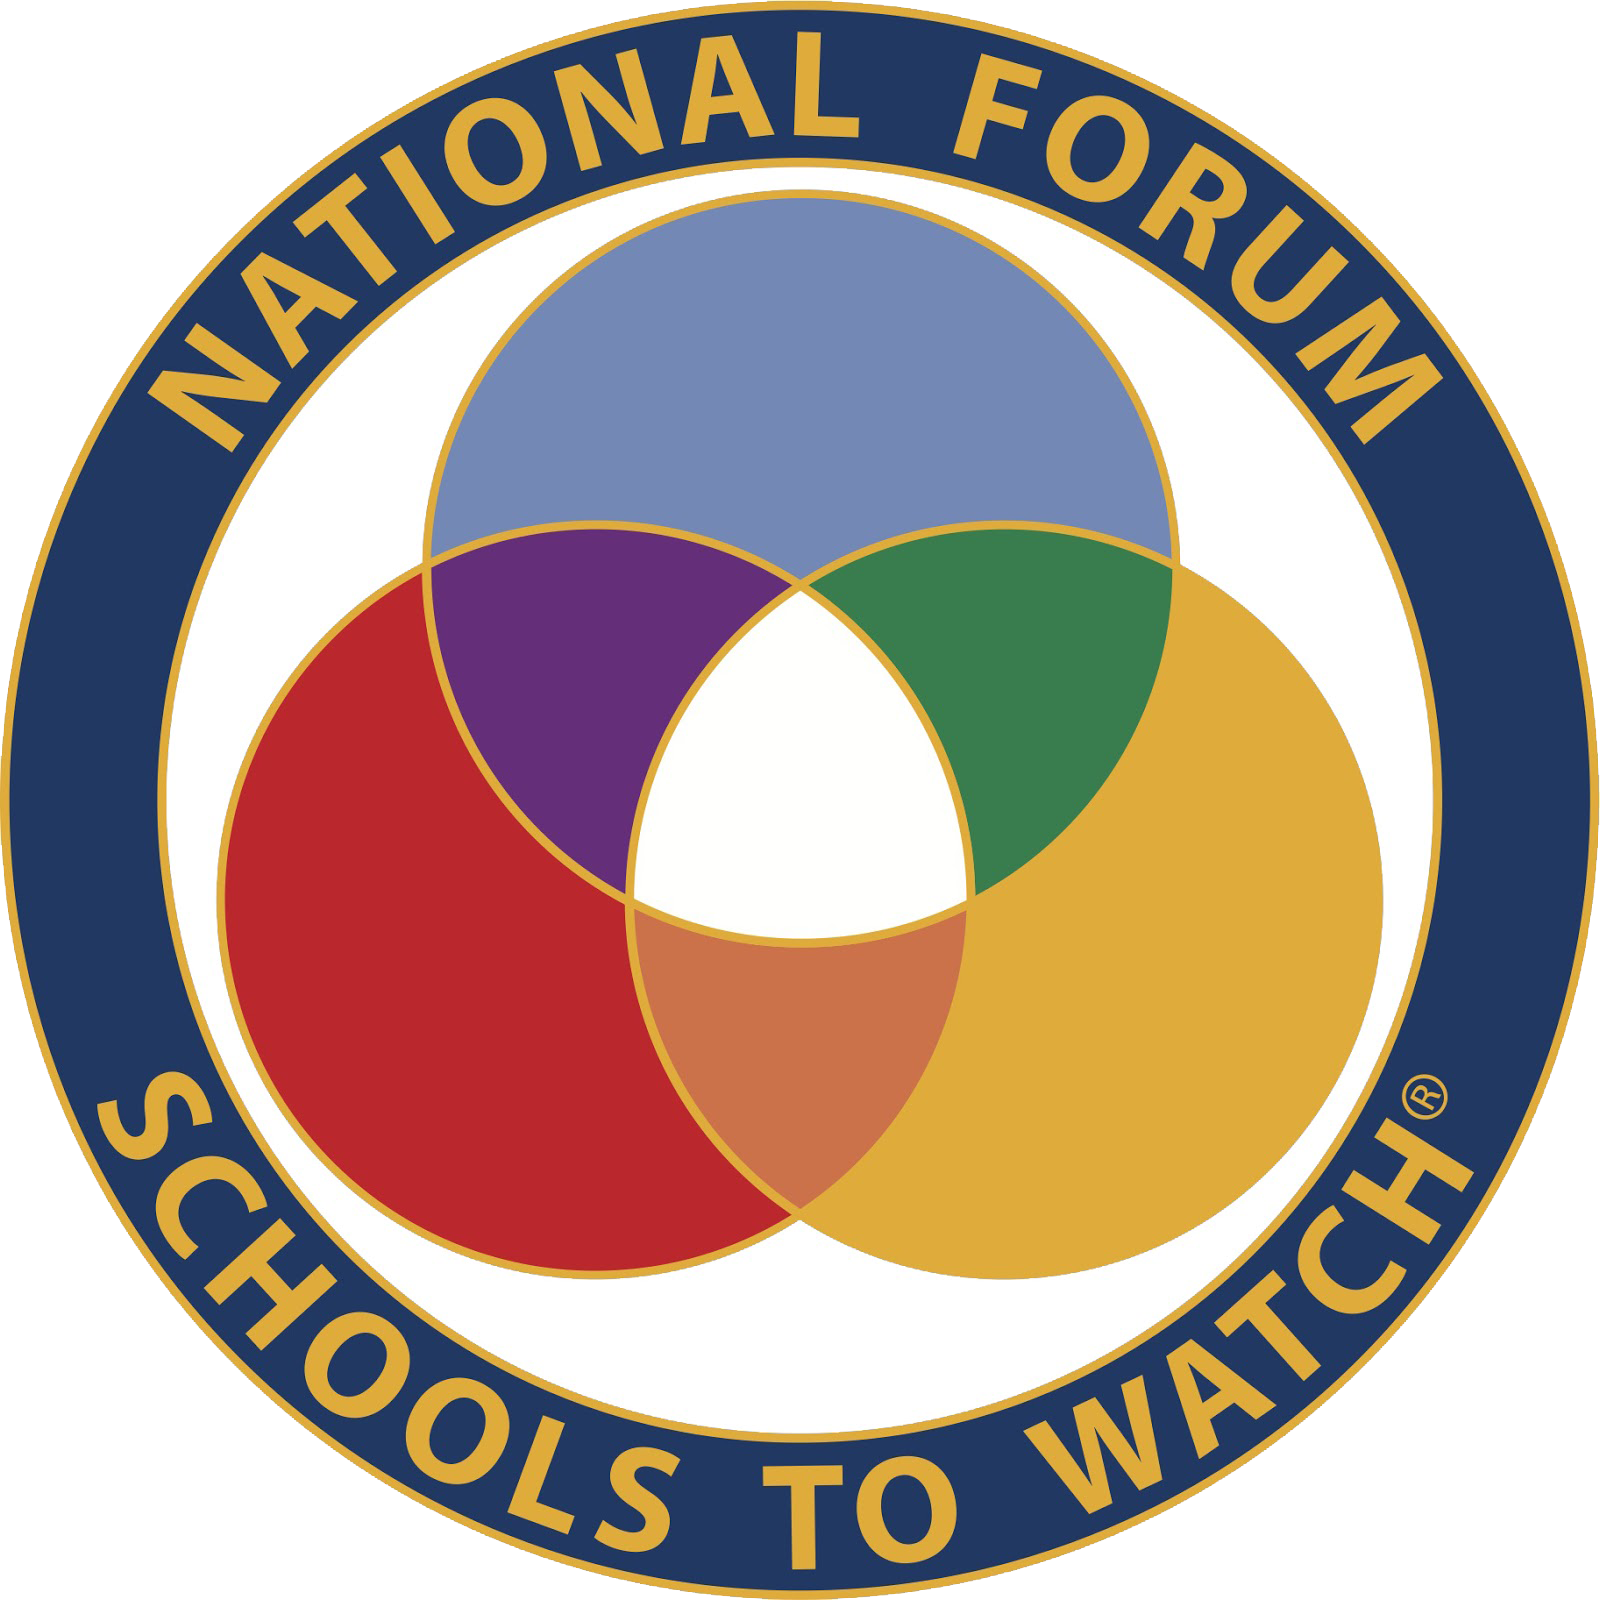 Schools to Watch